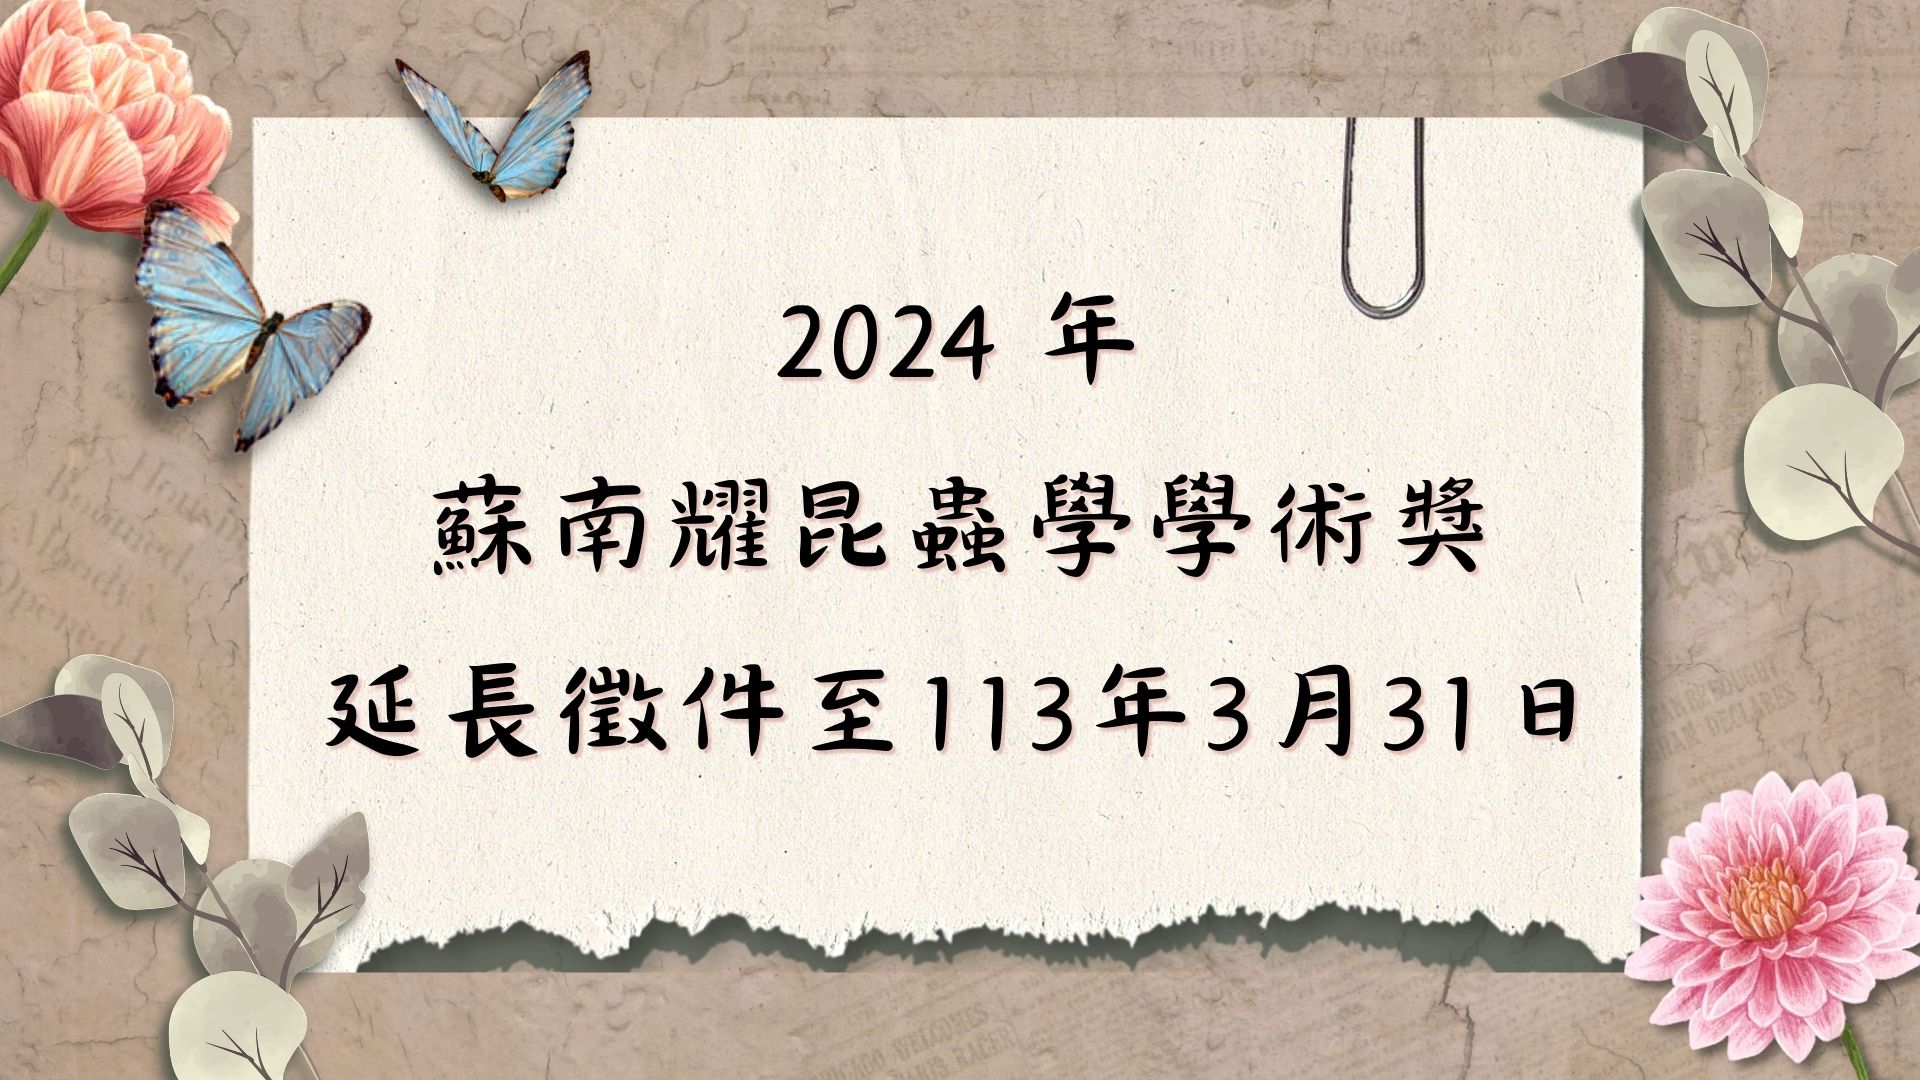 【轉知】2024年蘇南耀昆蟲學學術獎 (延長徵件至113/03/31)